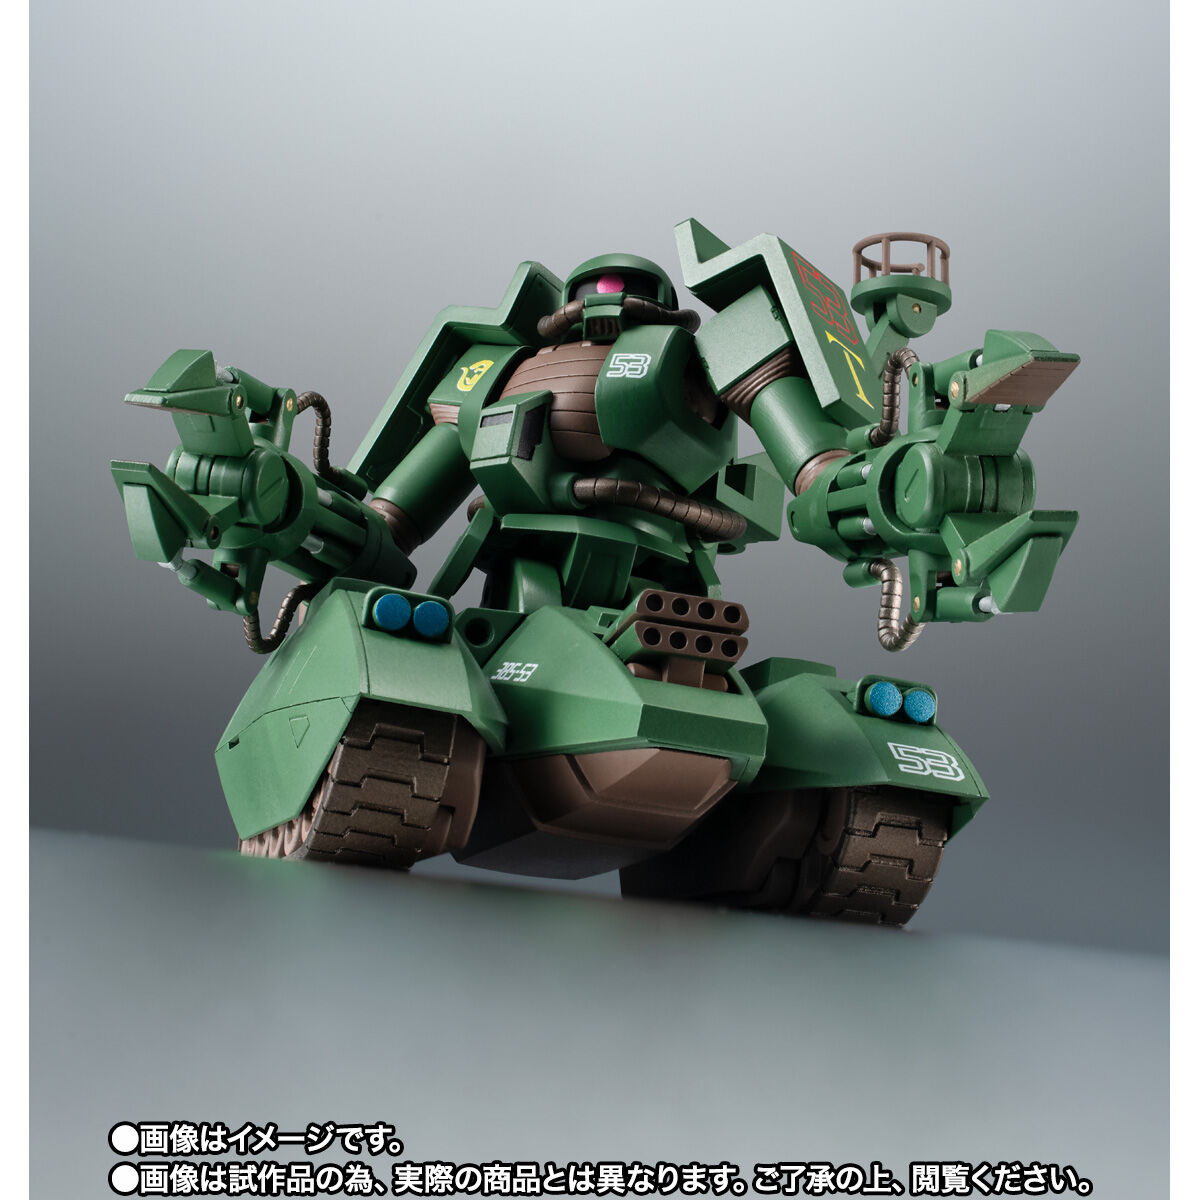 【限定販売】ROBOT魂〈SIDE MS〉『MS-06V-6 ザクタンク（グリーン・マカク）ver. A.N.I.M.E.』機動戦士ガンダム MSV 可動フィギュア-004